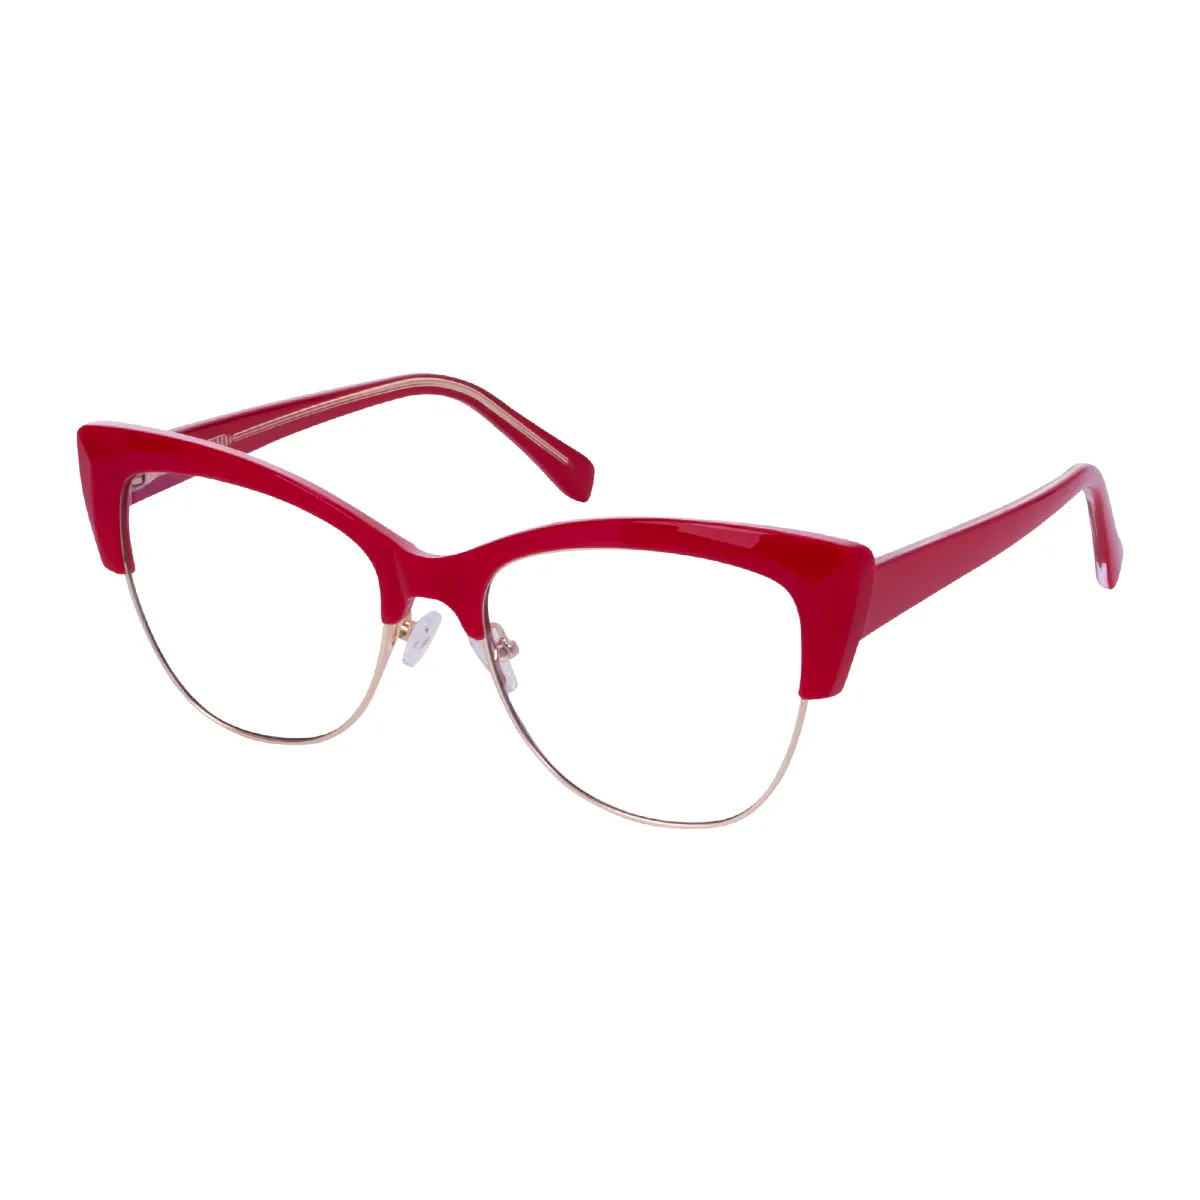 Kitty - Half-Rim Red Glasses for Women